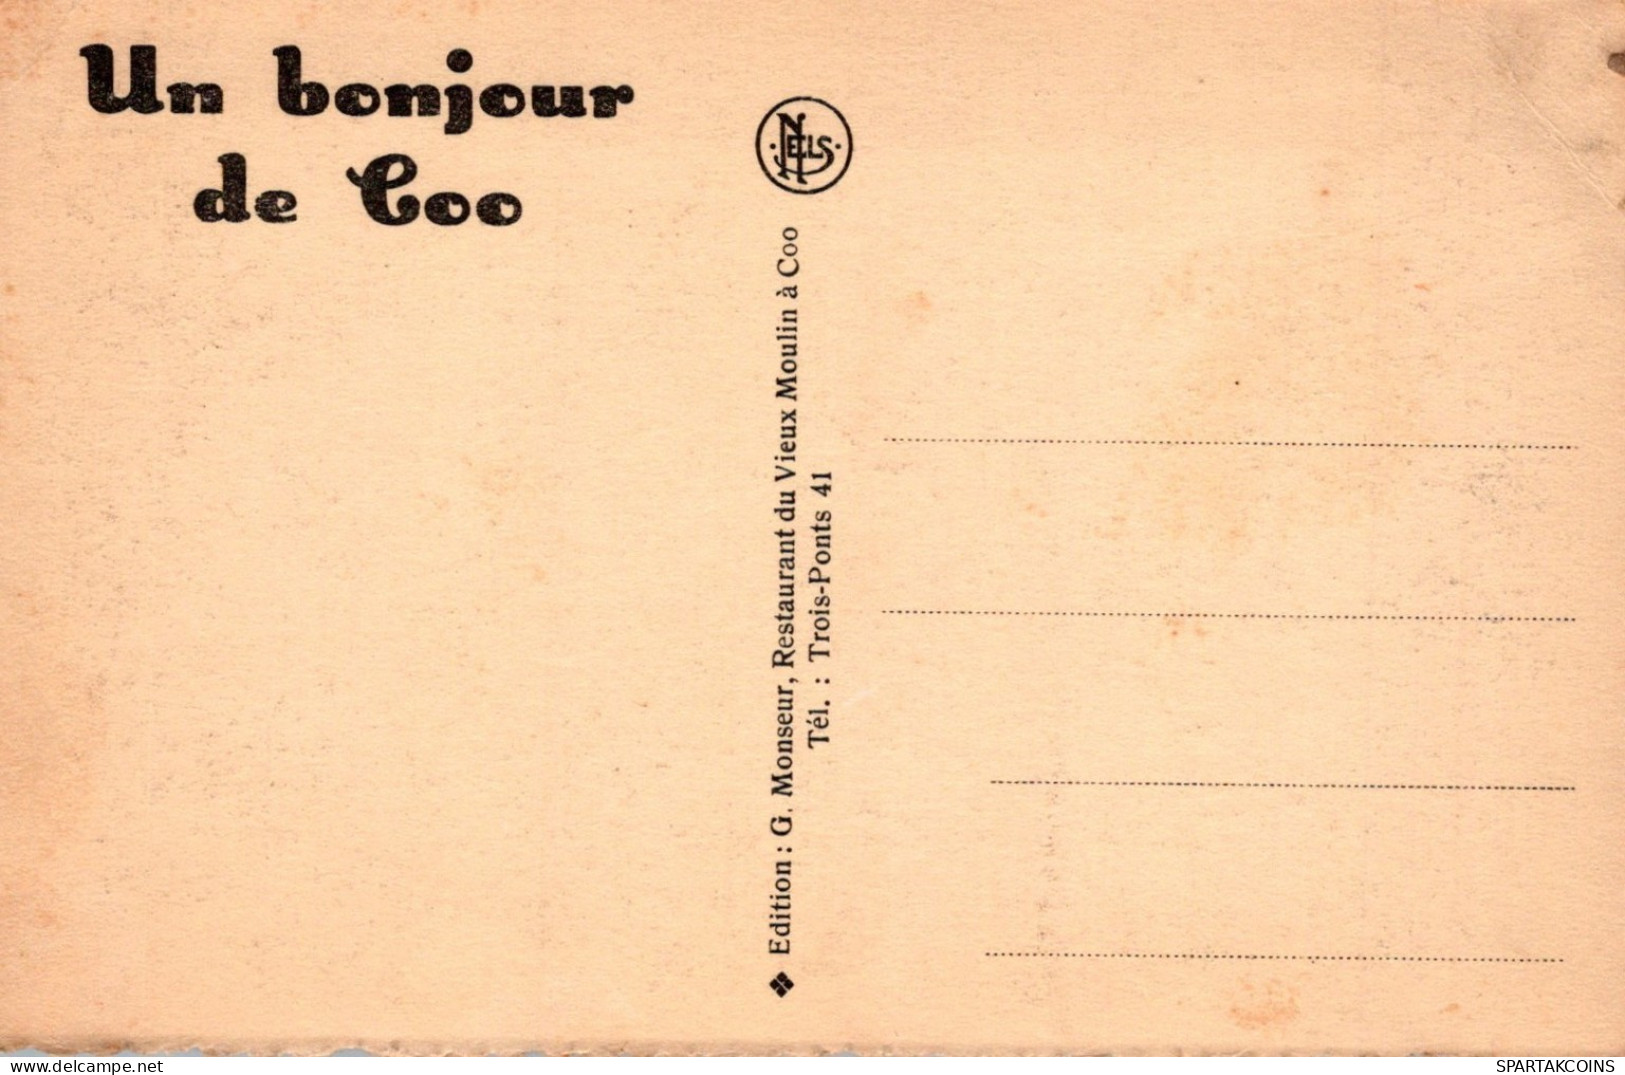 BELGIQUE CASCADE DE COO Province De Liège Carte Postale CPA Unposted #PAD179.A - Stavelot